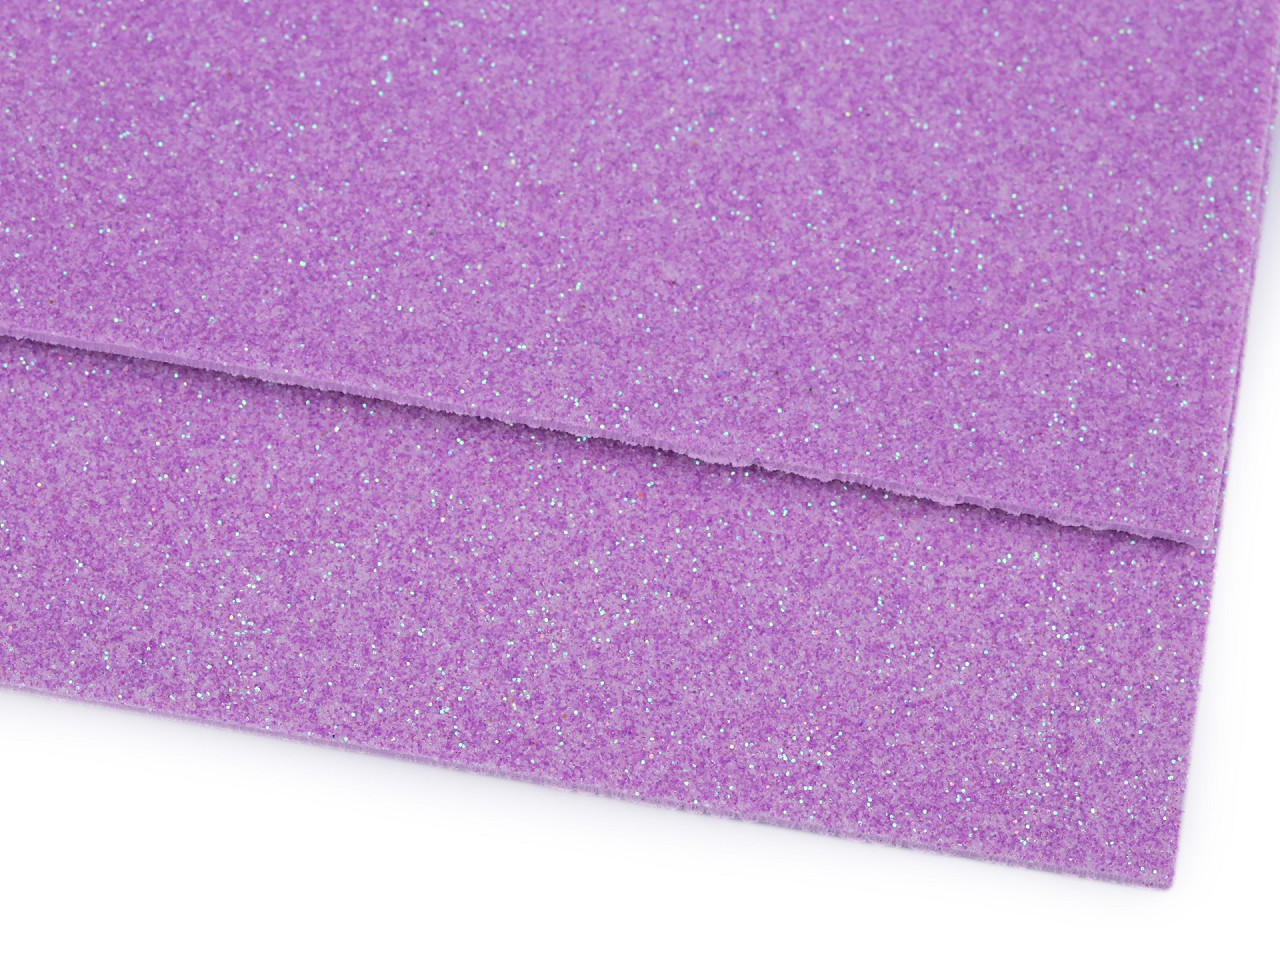 Pěnová guma Moosgummi s glitry 20x30 cm, barva 18 fialová lila